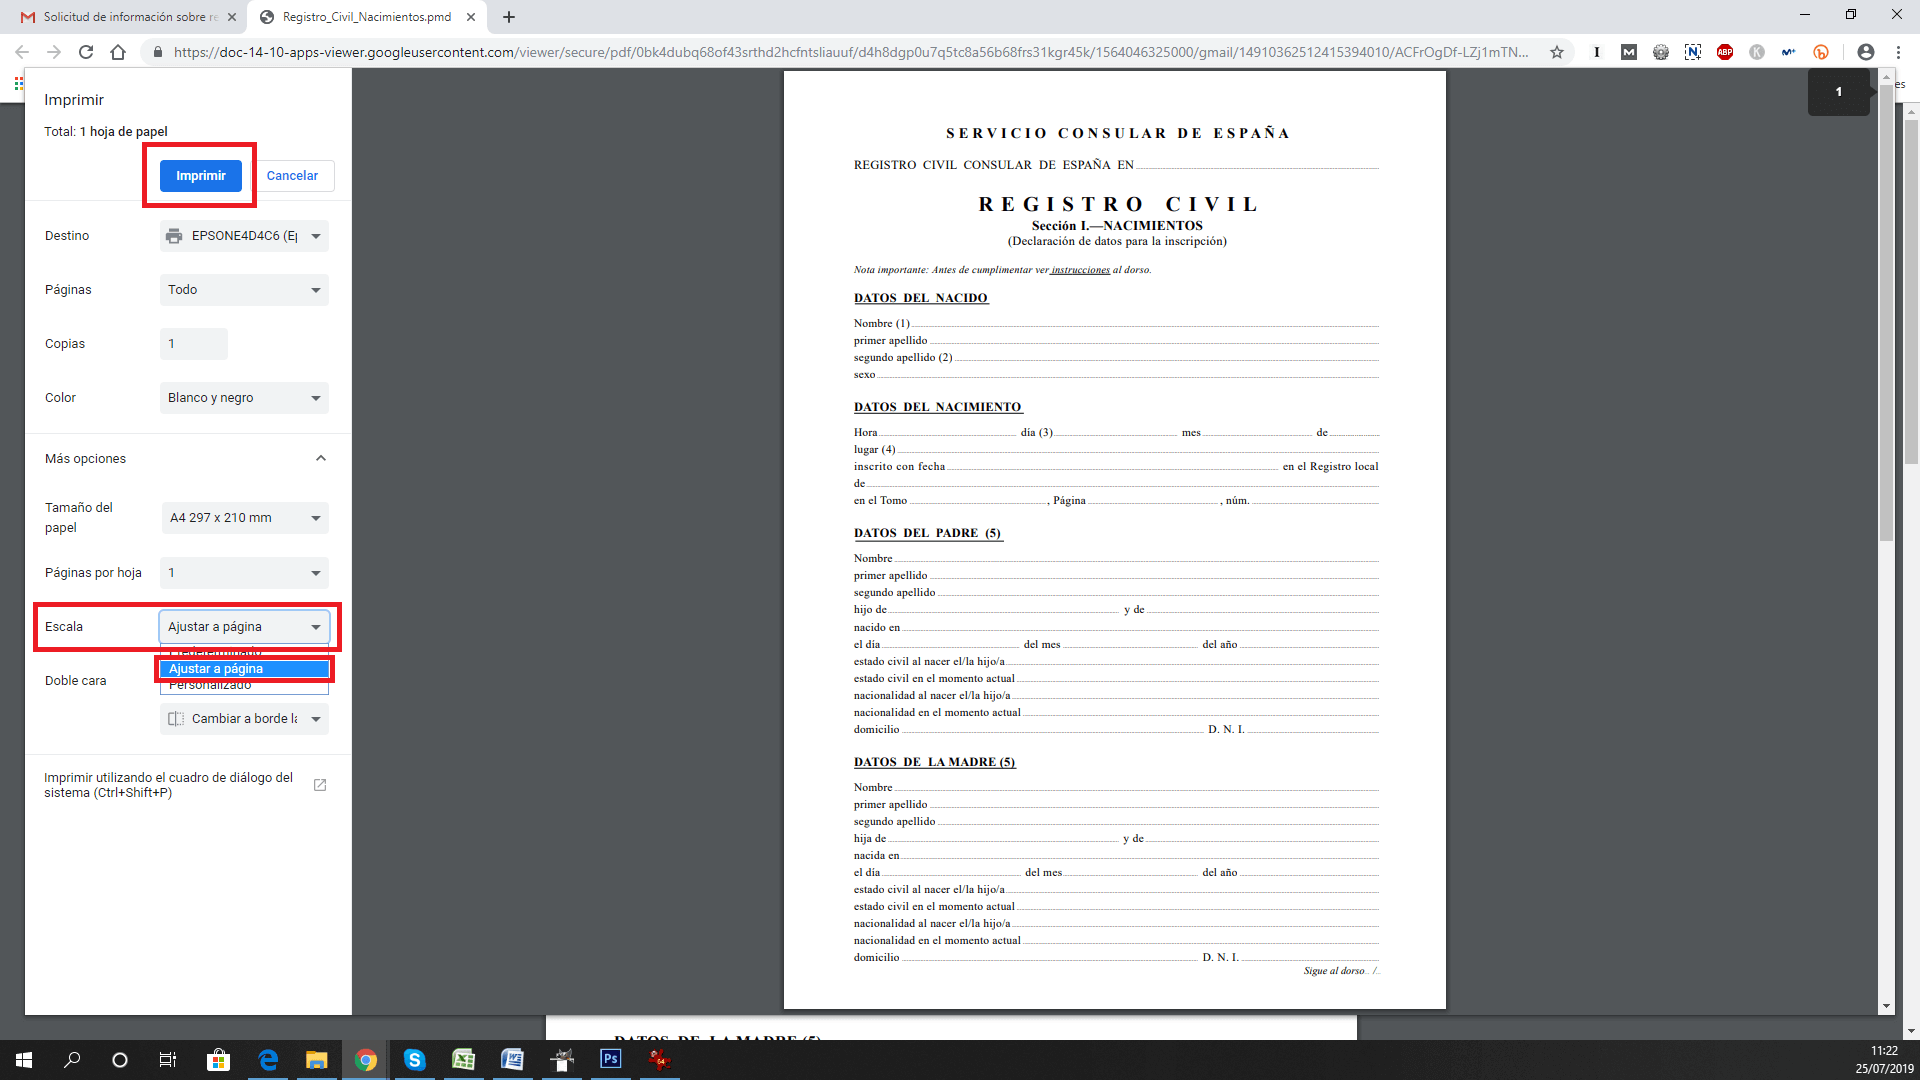 el documento no se ajusta a la pagina cuando imprimo